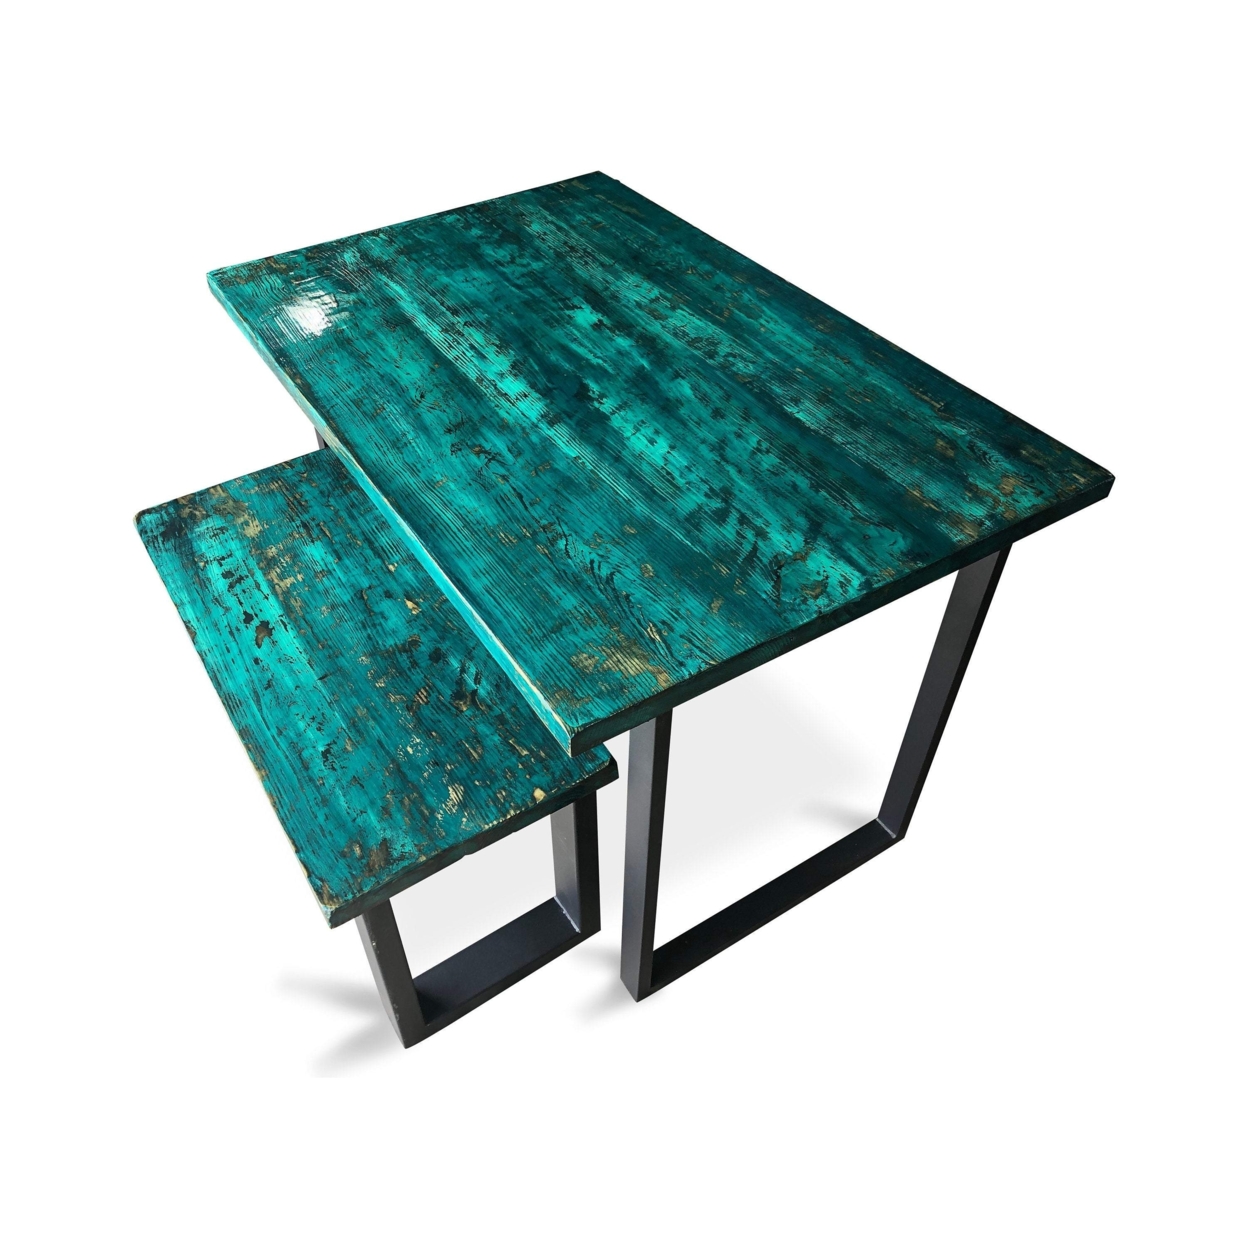 UMBUZÃ Wood Dining Table & Bench - 60 x 30"